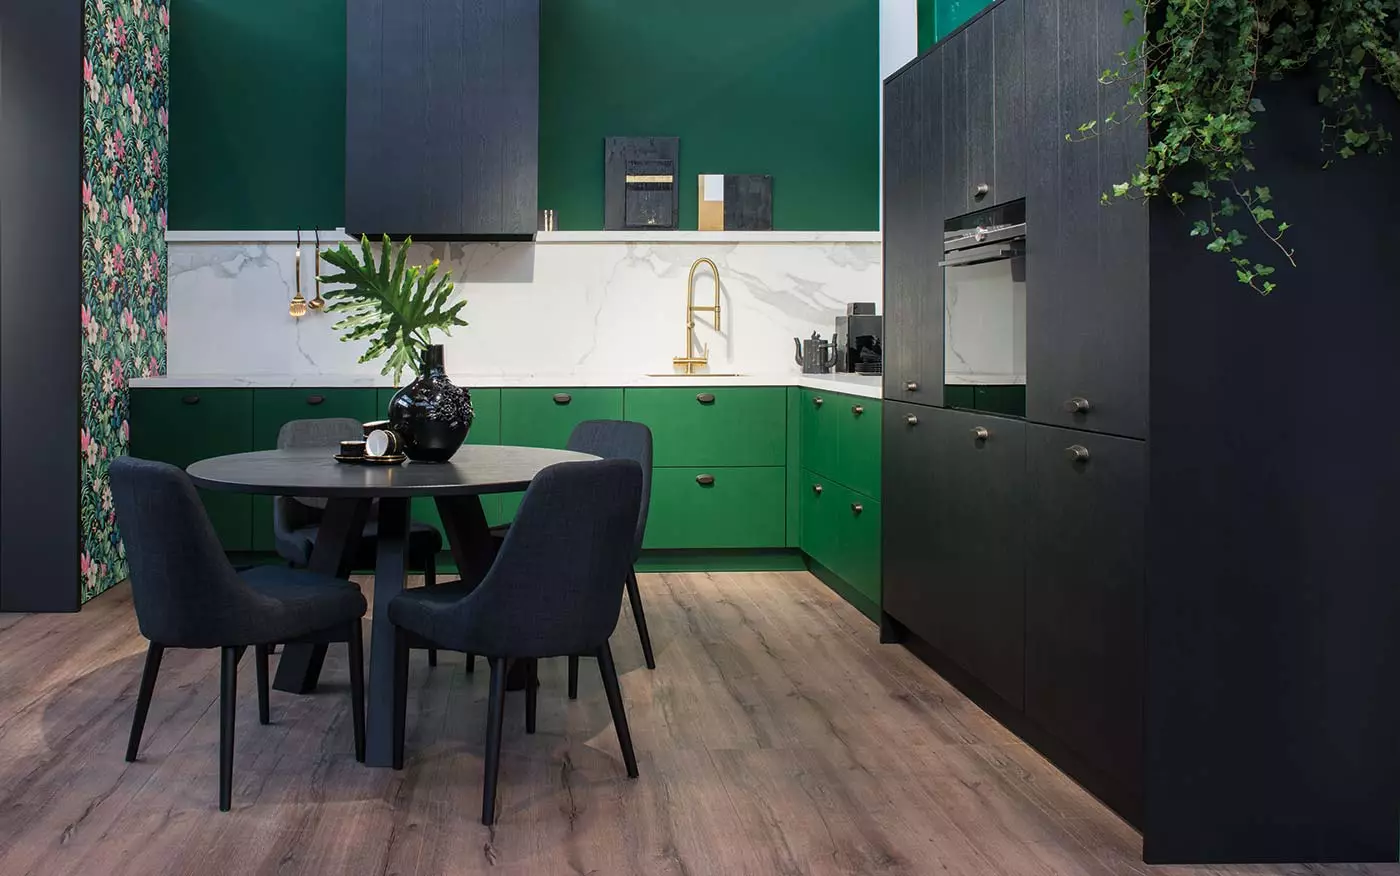 آشپزخانه سیاه (100 عکس): آشپزخانه مخملی سیاه و سفید با چوب در طراحی داخلی، مات و آشپزخانه براق در رنگ های خاکستری سیاه و سفید، طراحی دیوار سیاه 21175_46